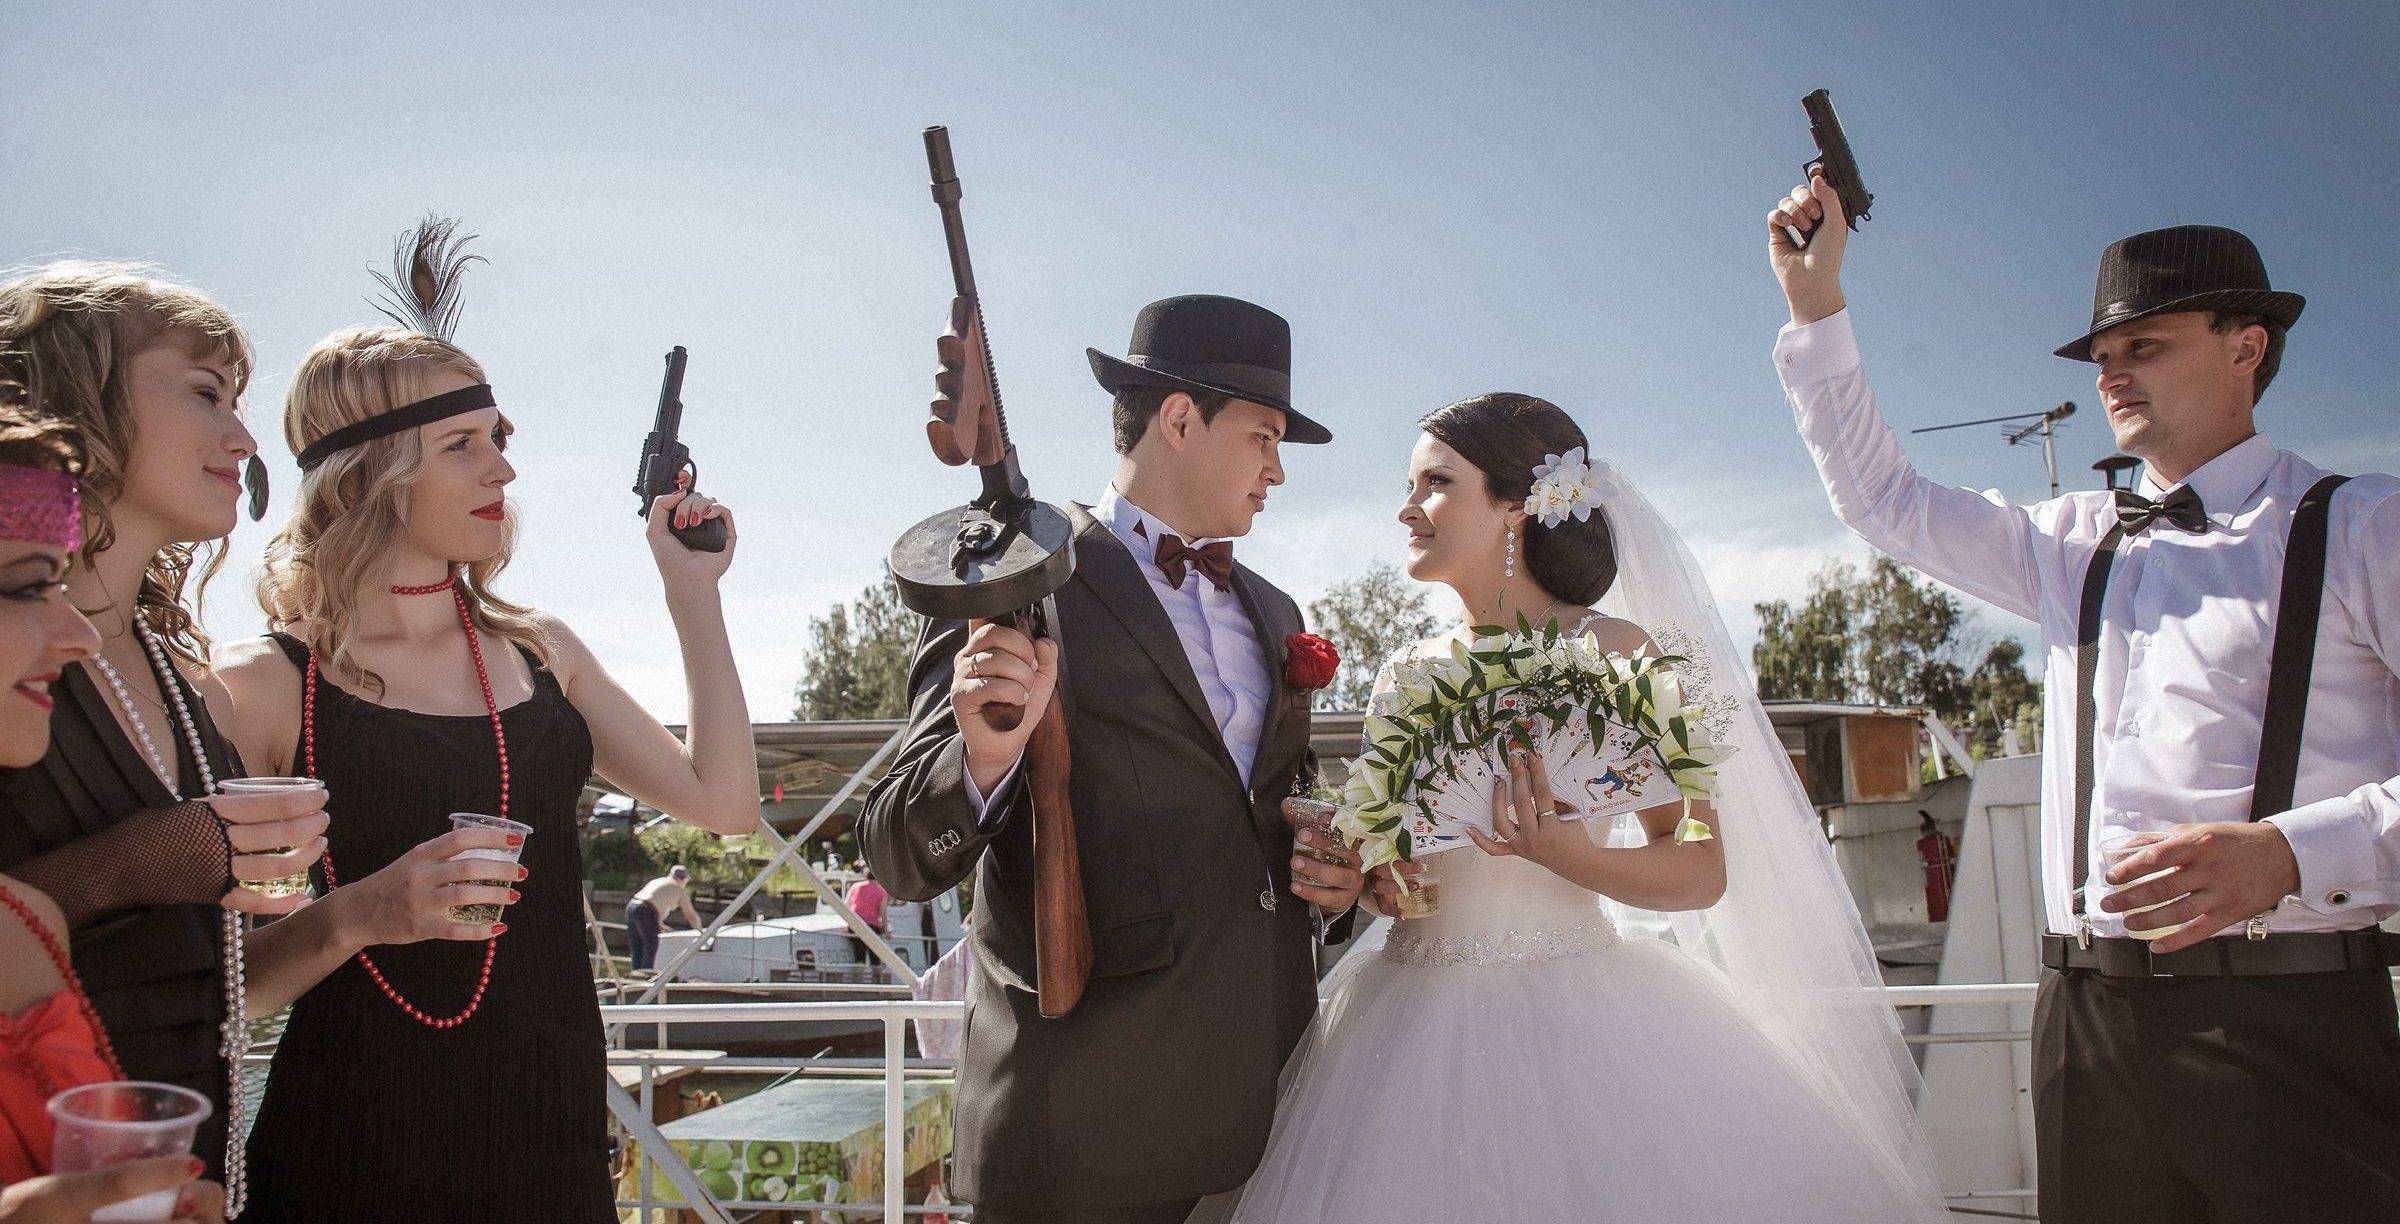 Оригинальный сценарий выкупа невесты в гангстерском стиле